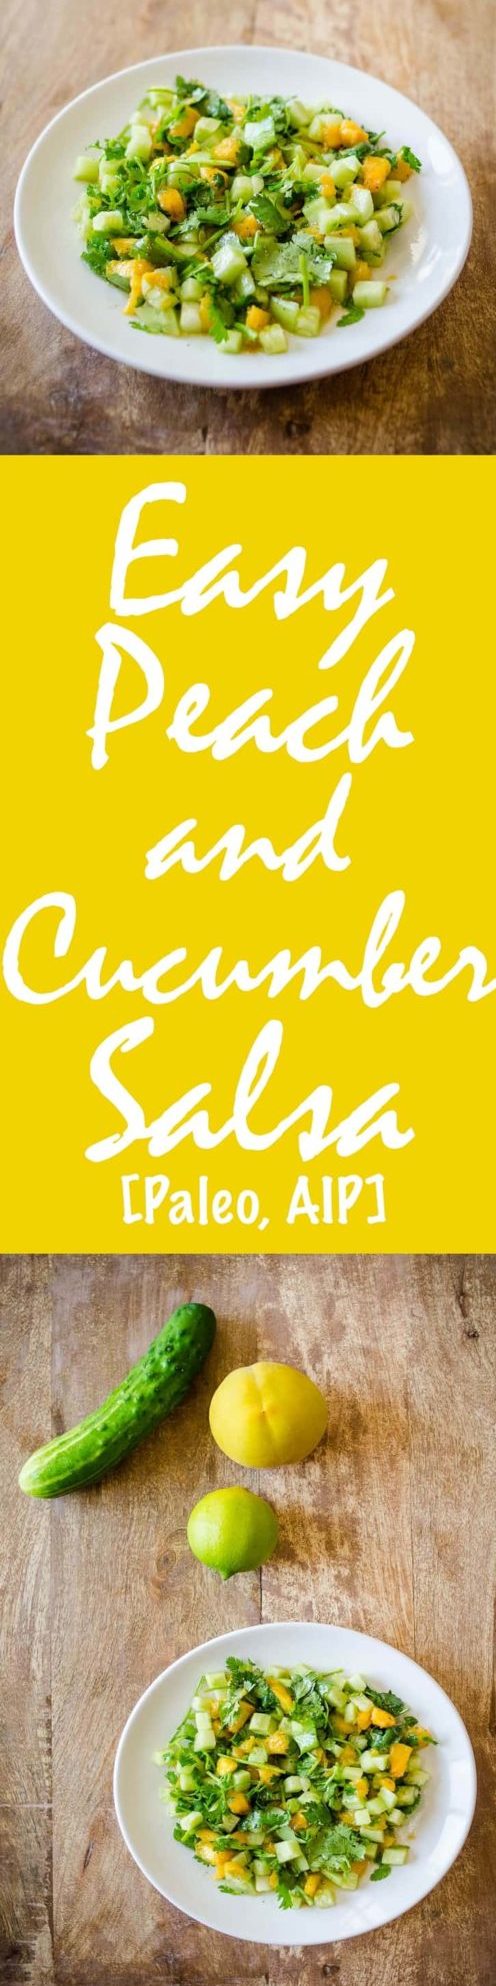 Easy Peach and Cucumber Salsa Recipe [Paleo, AIP] #paleo #aip #recipes - https://paleoflourish.com/easy-peach-cucumber-salsa-recipe